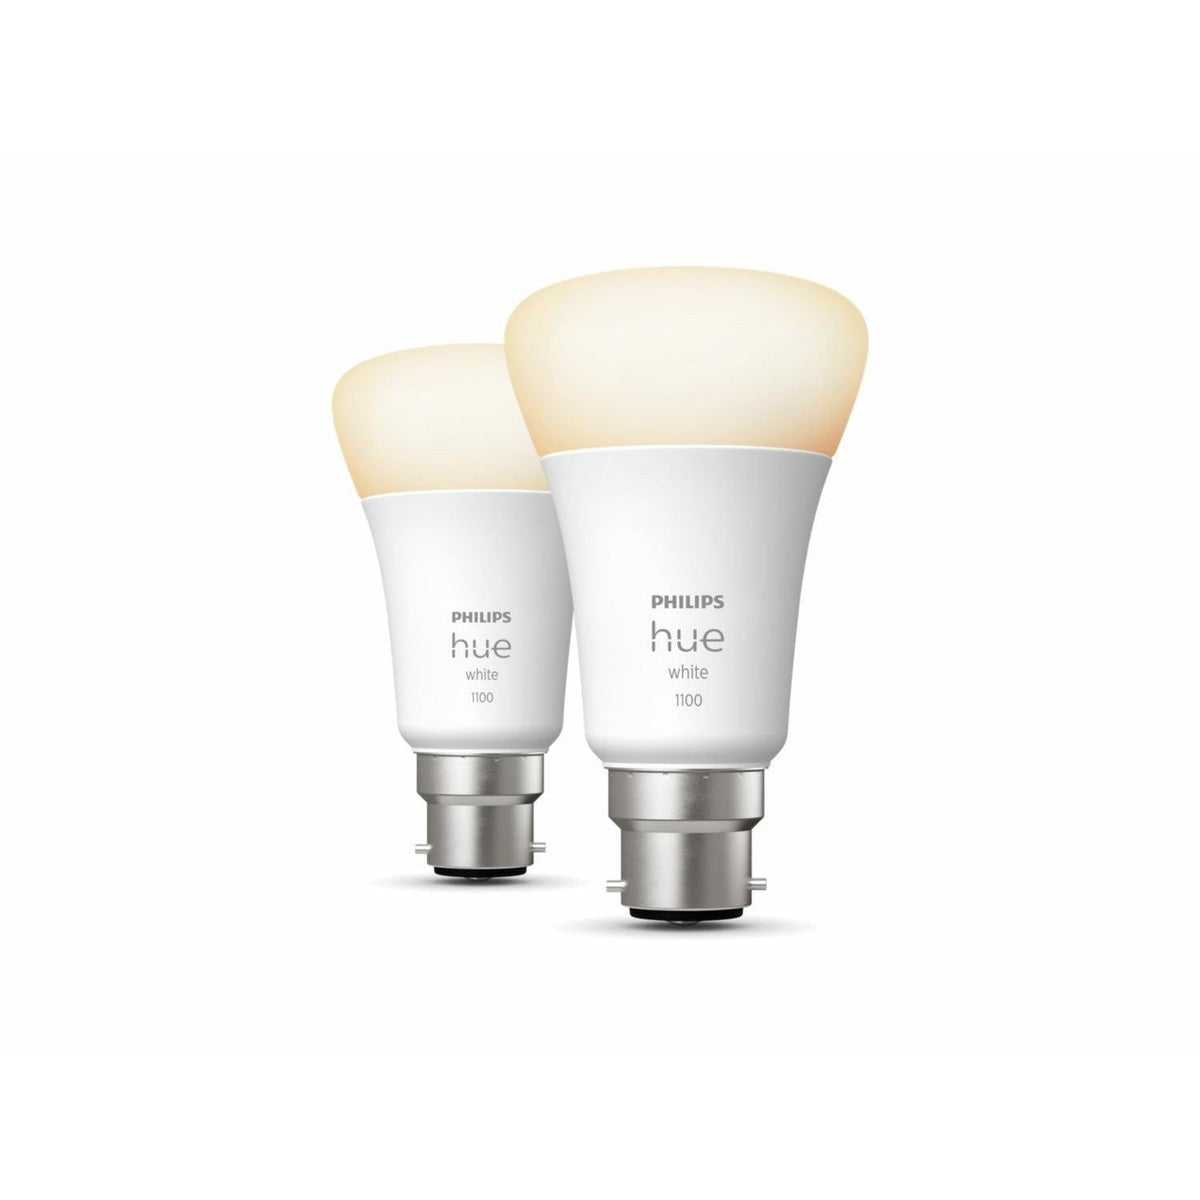 Philips Hue White B22 Smart LED Bulb - Pack of 2 | 929002469302 (7490302869692)